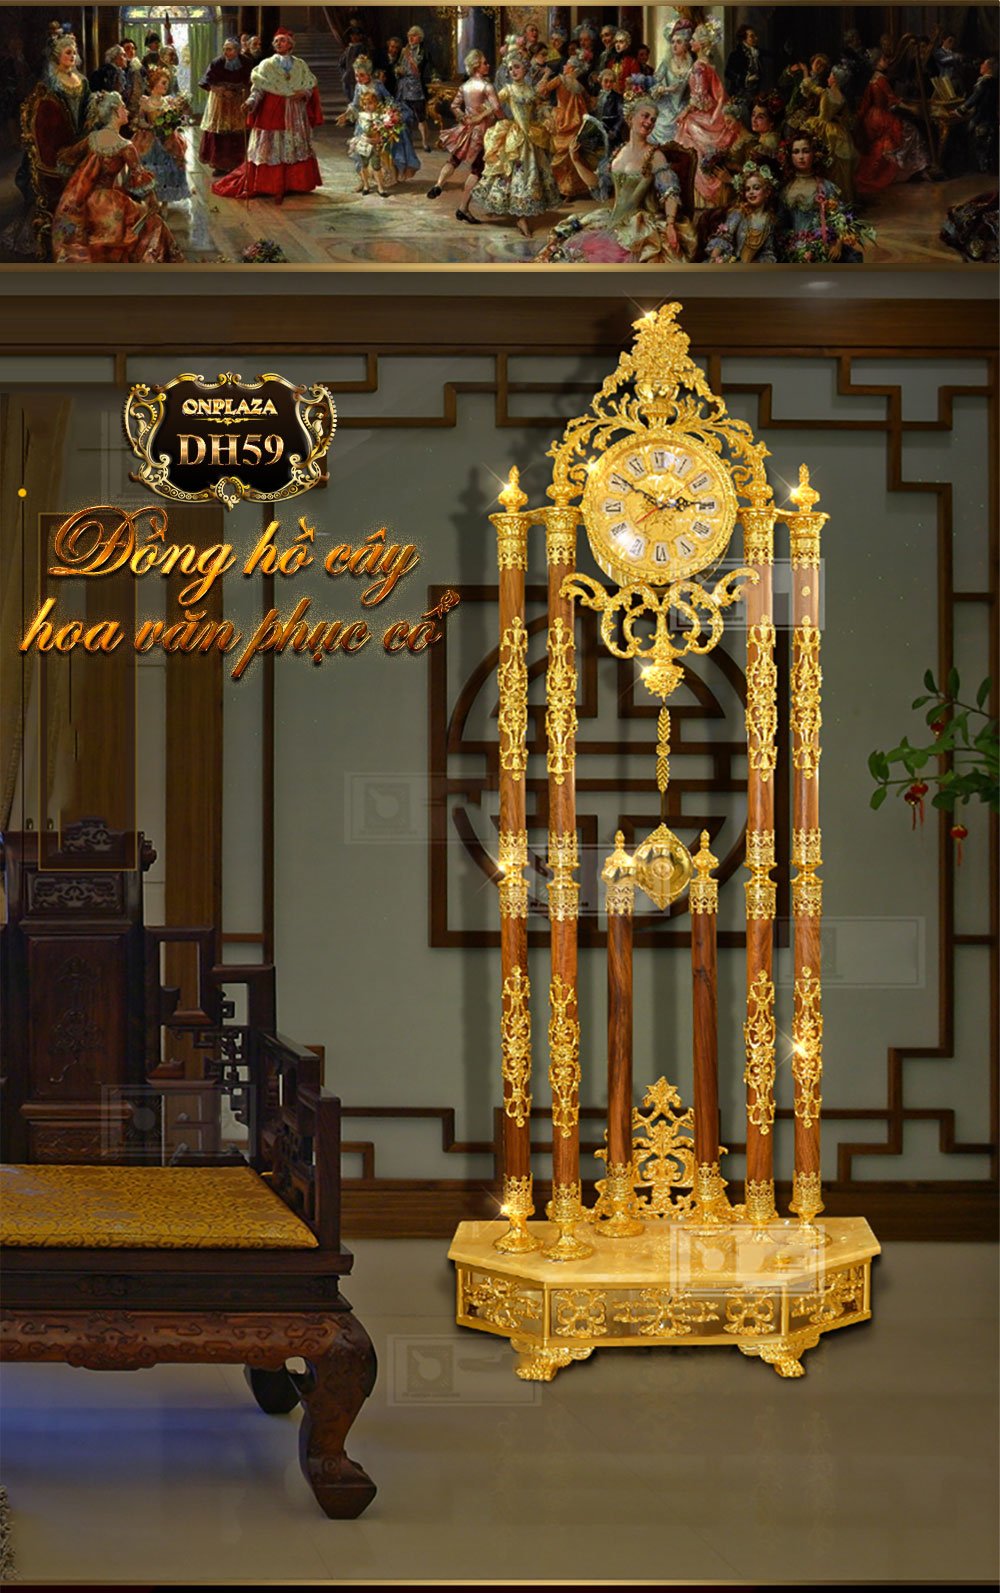 Đồng hồ cây cao cấp chạm khắc hoa văn tân cổ điền mạ vàng 24k sang trọng DH59